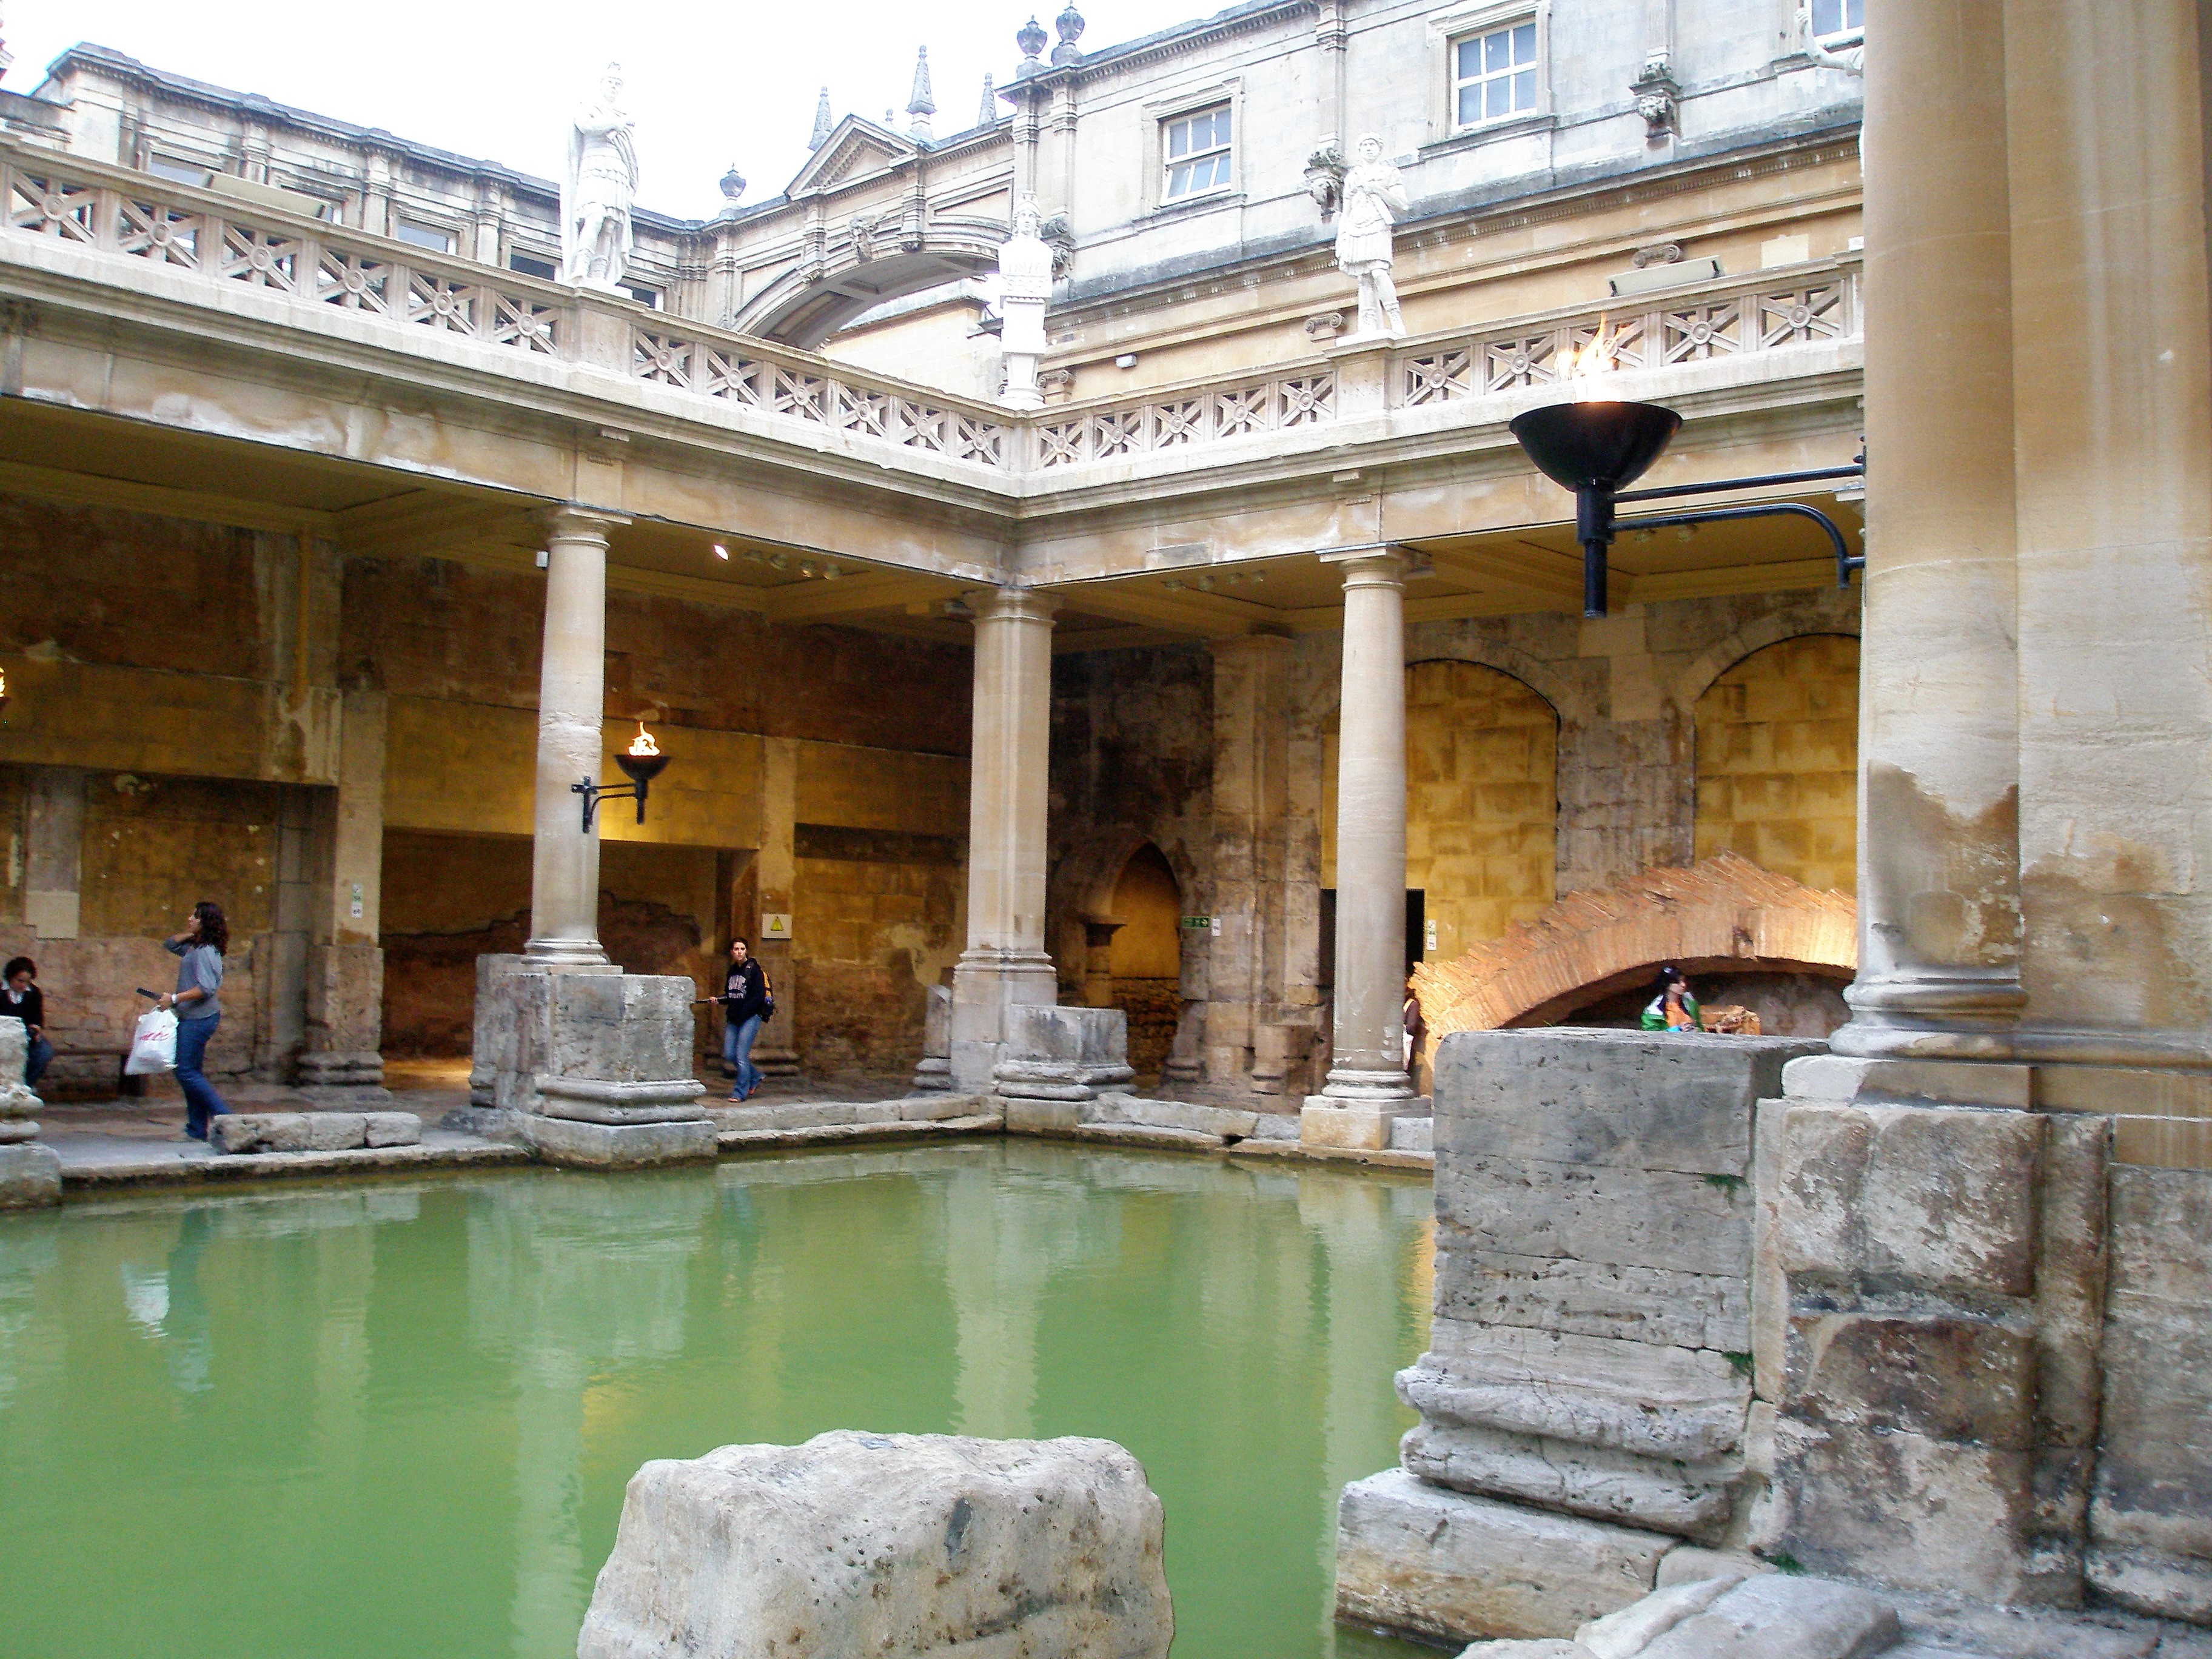 Baths unike arkitektoniske skatter har plassert hele byen på UNESCOs verdensarvliste. Foto: Turid Lismoen